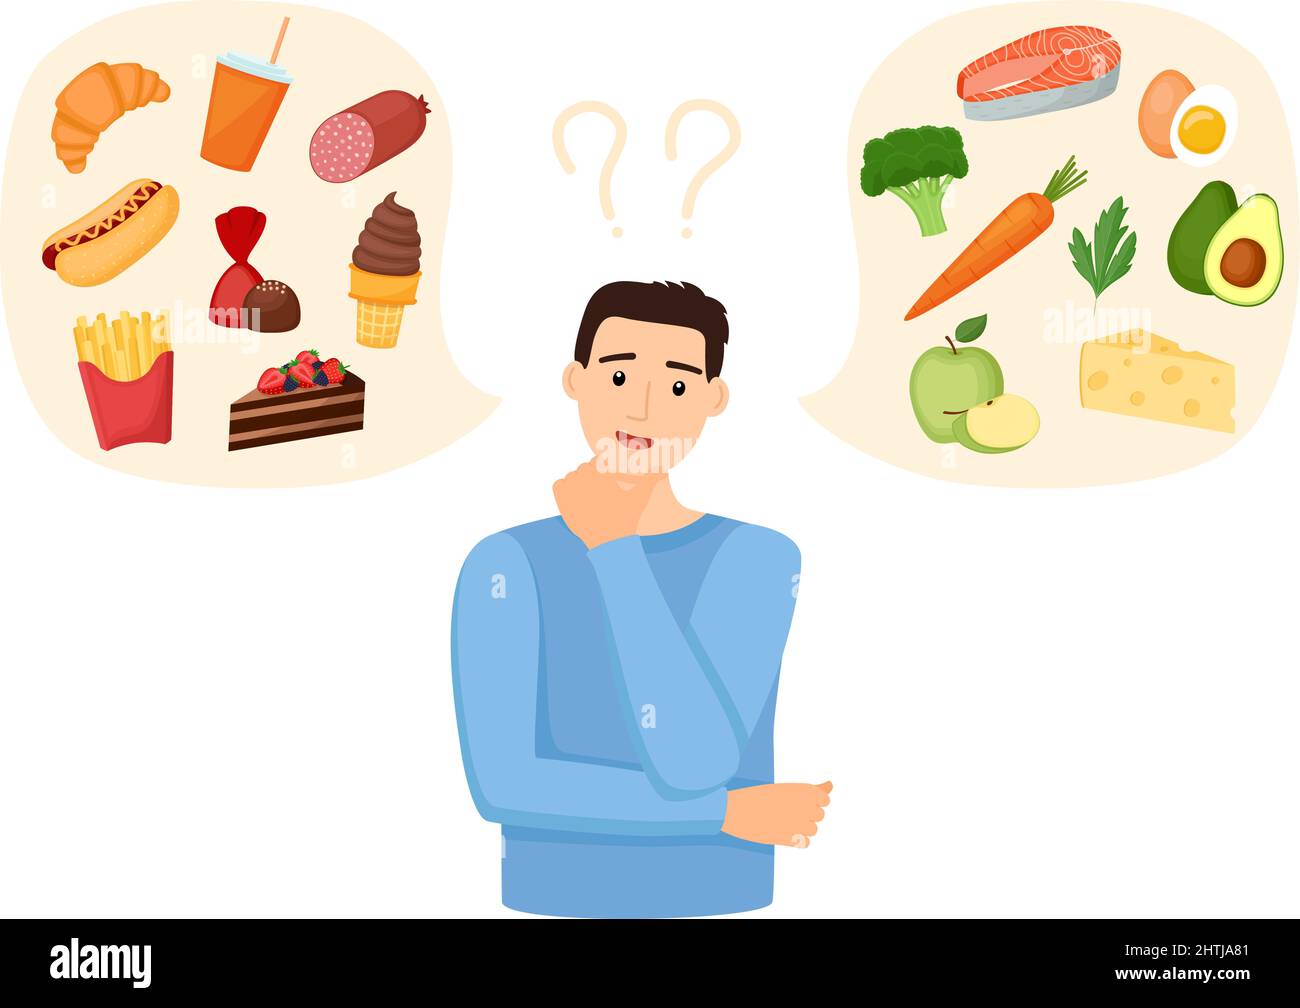 Der Mensch wählt zwischen gesunden und ungesunden Lebensmitteln. Fastfood im Vergleich zu einem ausgewogenen Menü. Konzeptvektordarstellung Stock Vektor